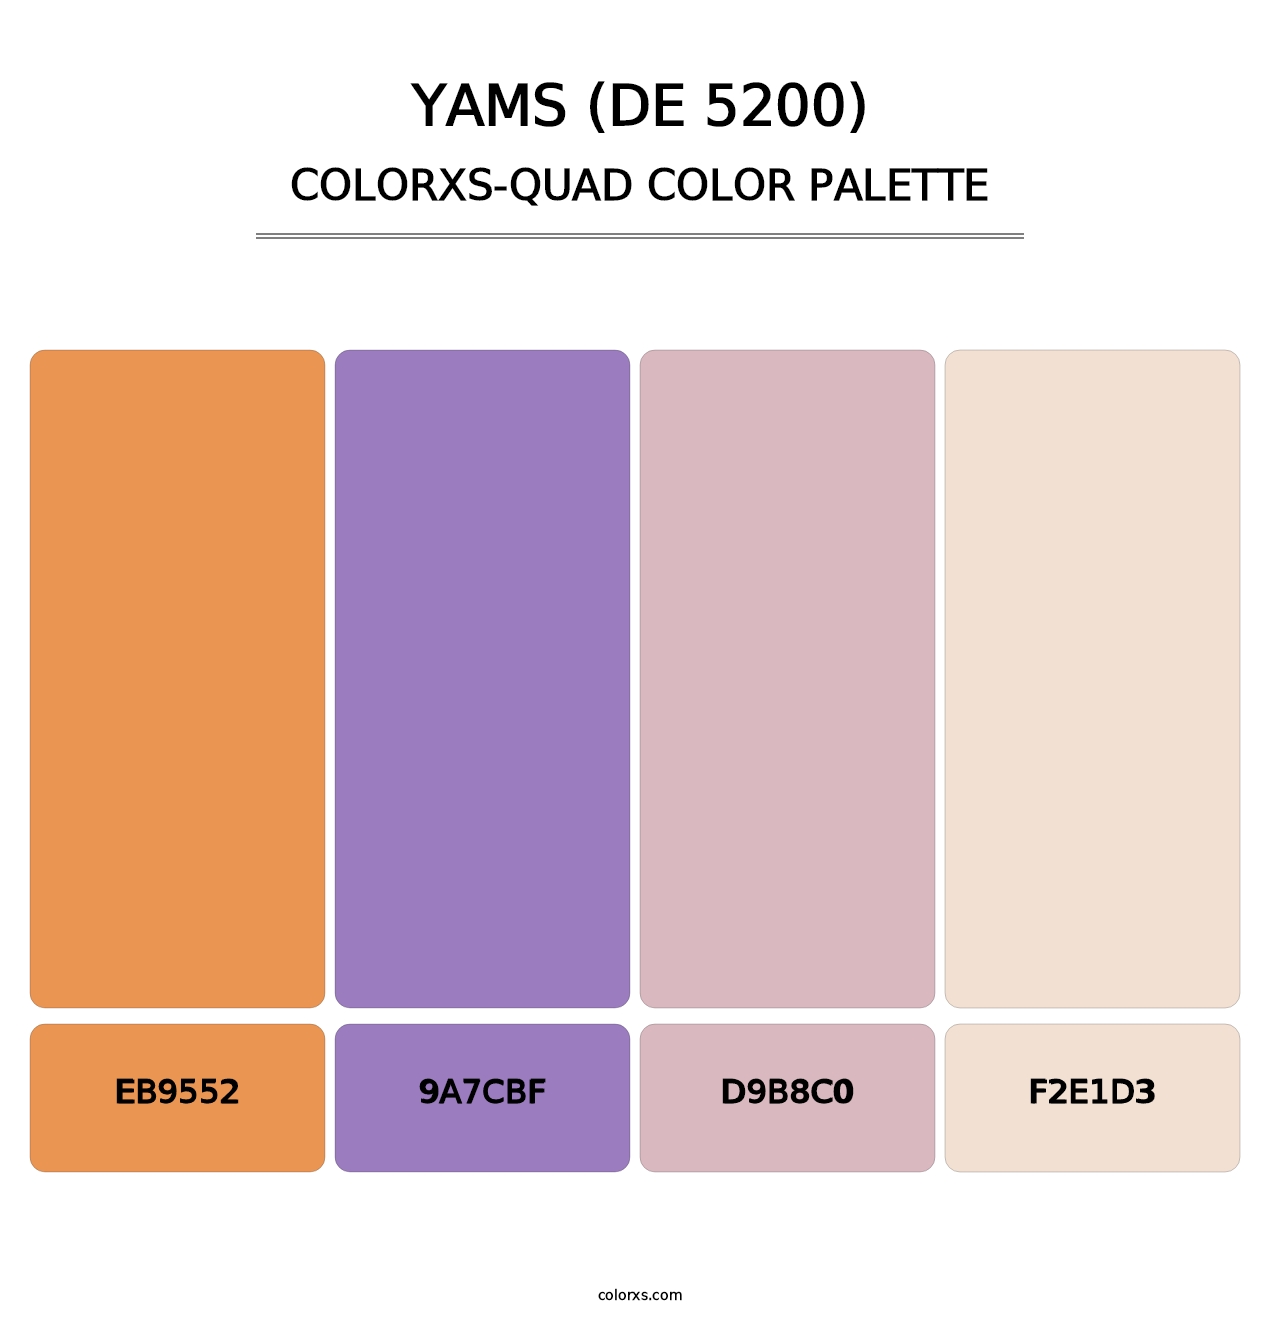 Yams (DE 5200) - Colorxs Quad Palette